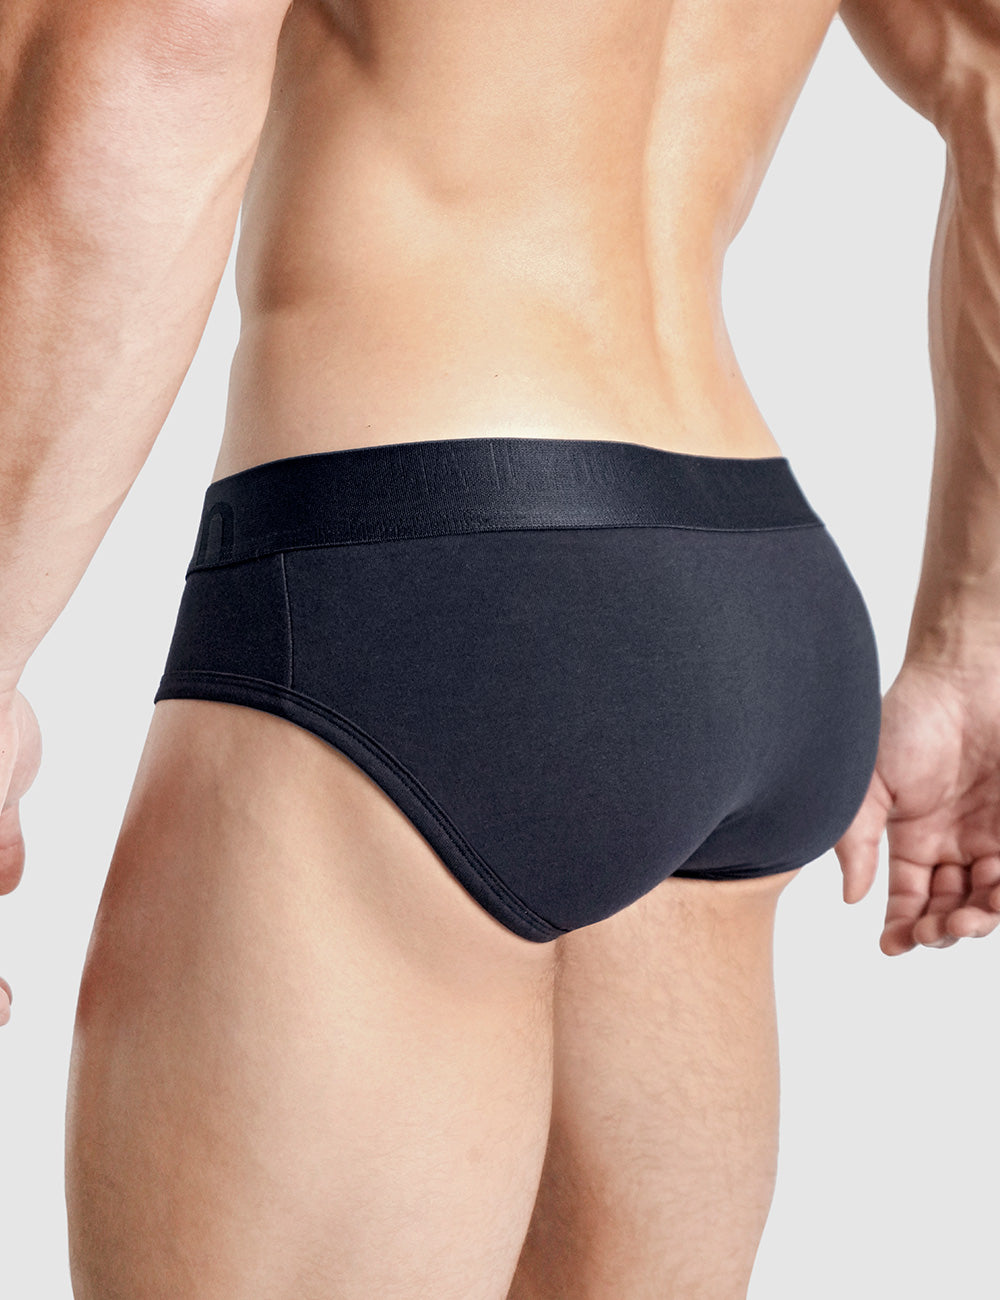 Modal Plain Premium Mens Underwear, Type: Briefs at Rs 209/piece in Surat